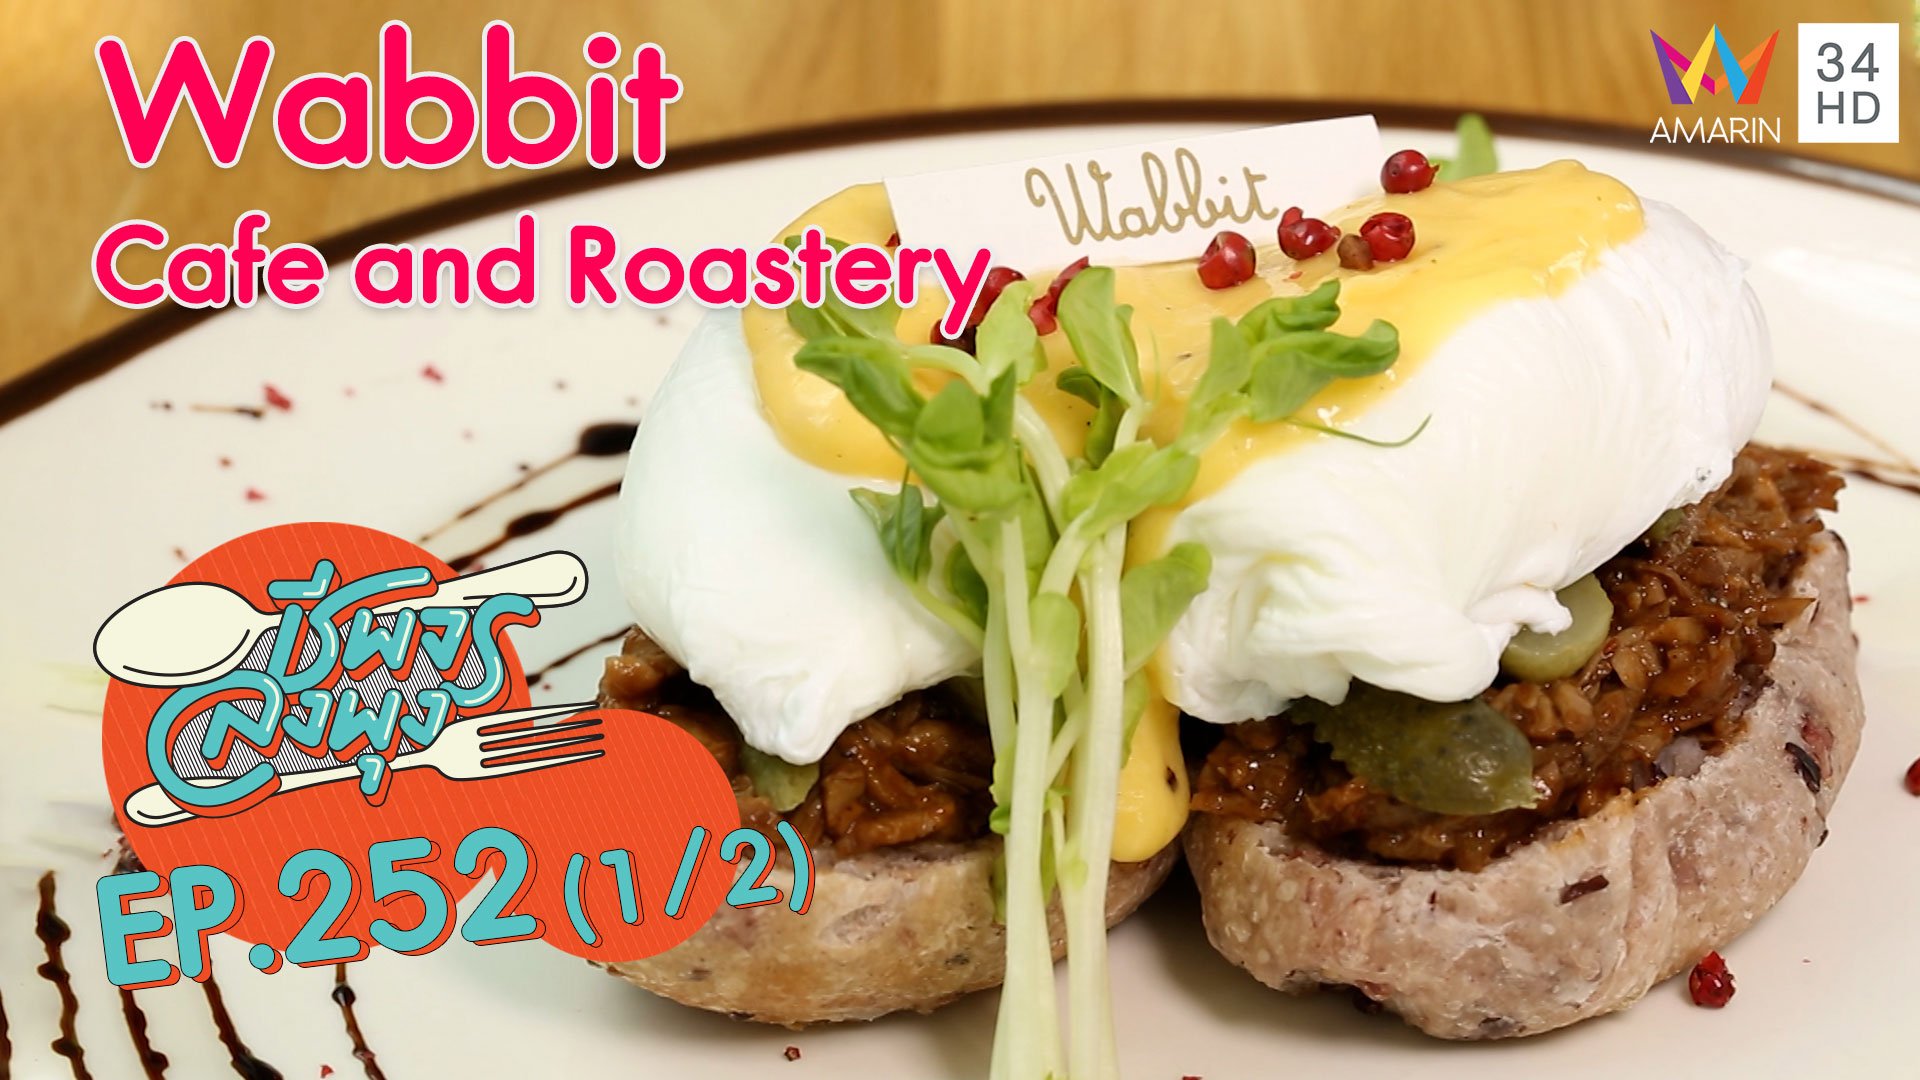 คาเฟ่สีขาวสุดชิค @"ร้าน Wabbit Cafe and Roastery" | ชีพจรลงพุง | 7 พ.ย. 63 (1/2) | AMARIN TVHD34